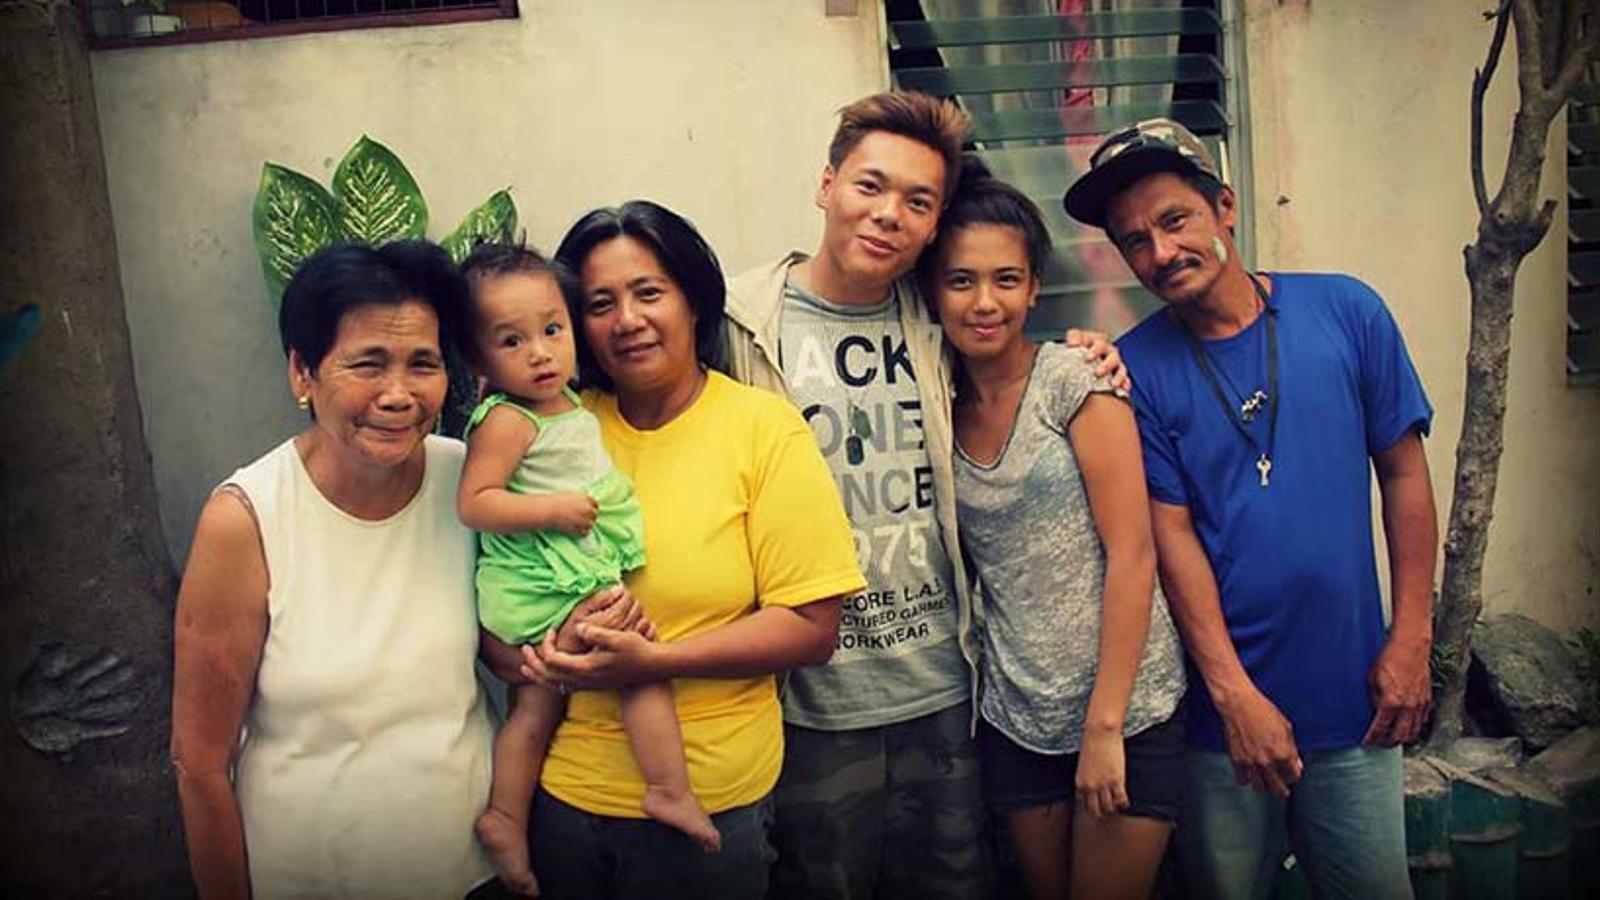 John tillsammans med sin biologiska familj i Filippinerna. Från vänster: Hans mormor, systerdotter, mamma, John själv, hans syster och pappa.